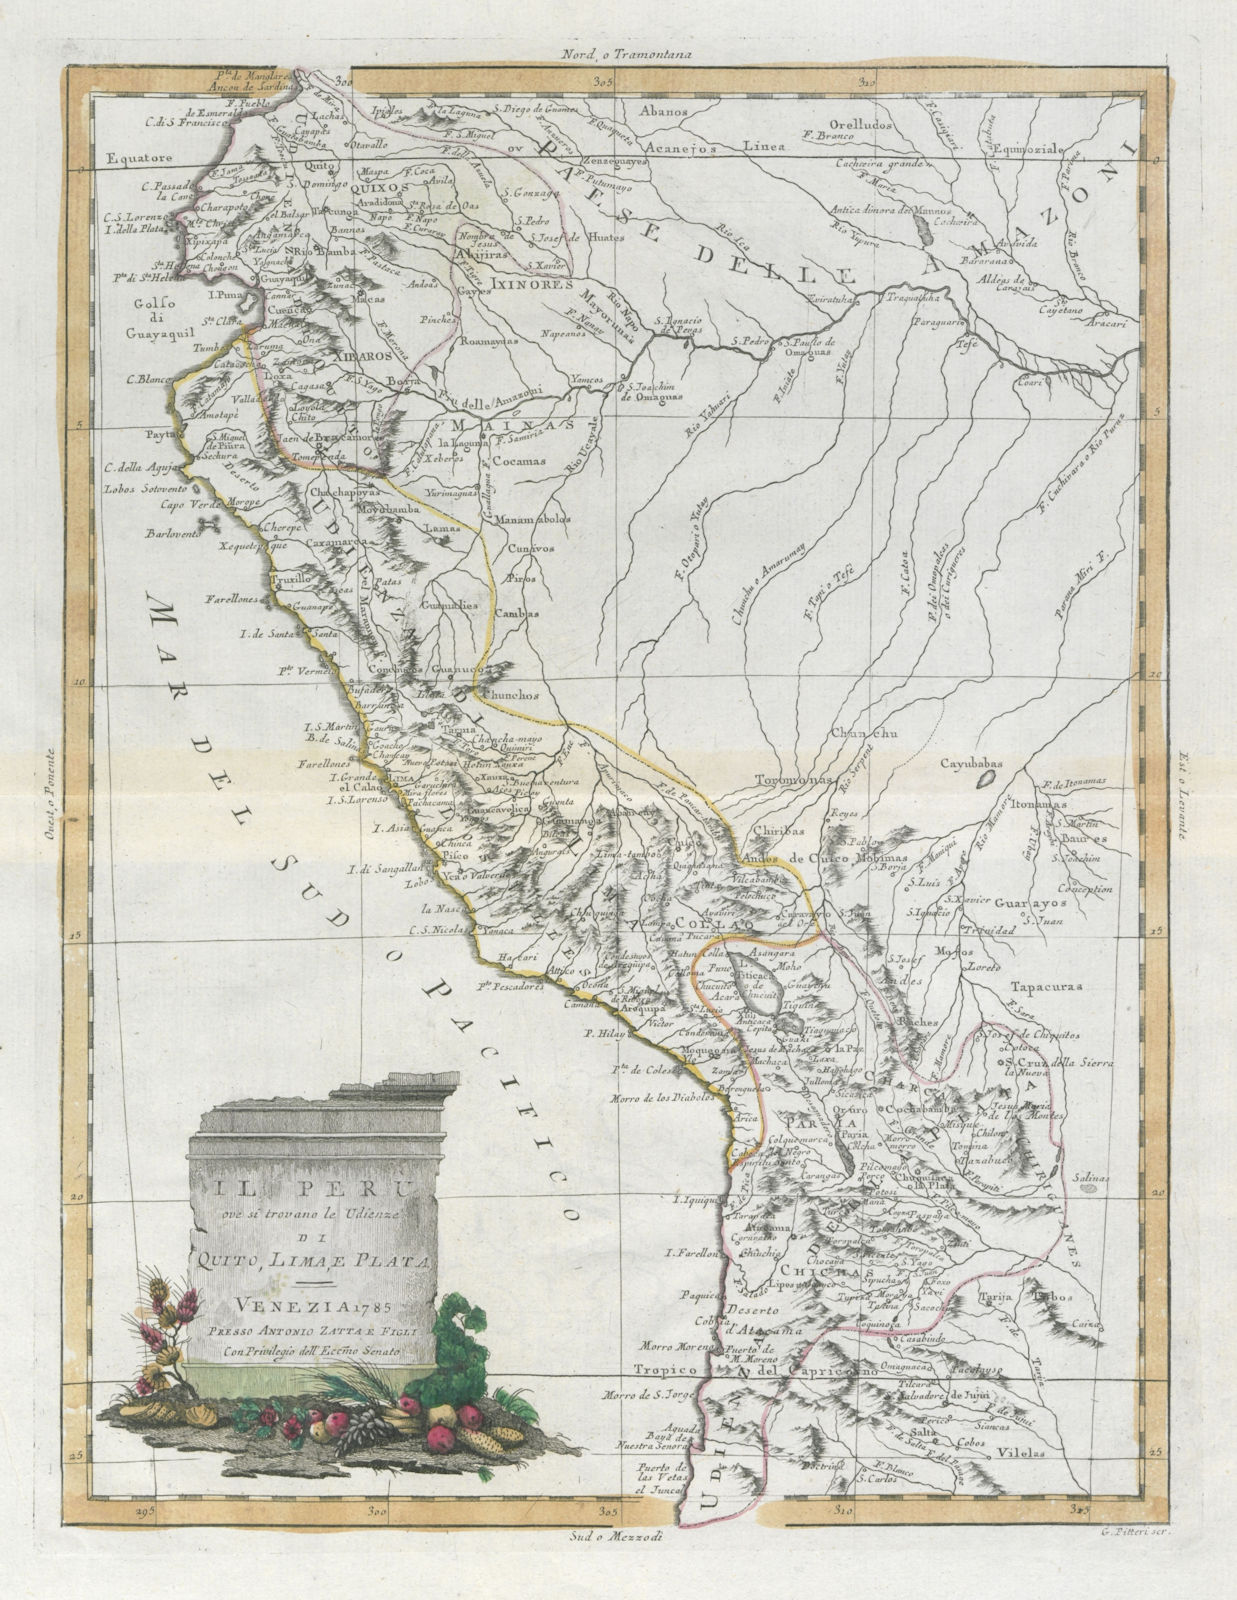 "Il Peru ove si trovano le Udienze di Quito, Lima e Plata" Andes. ZATTA 1785 map